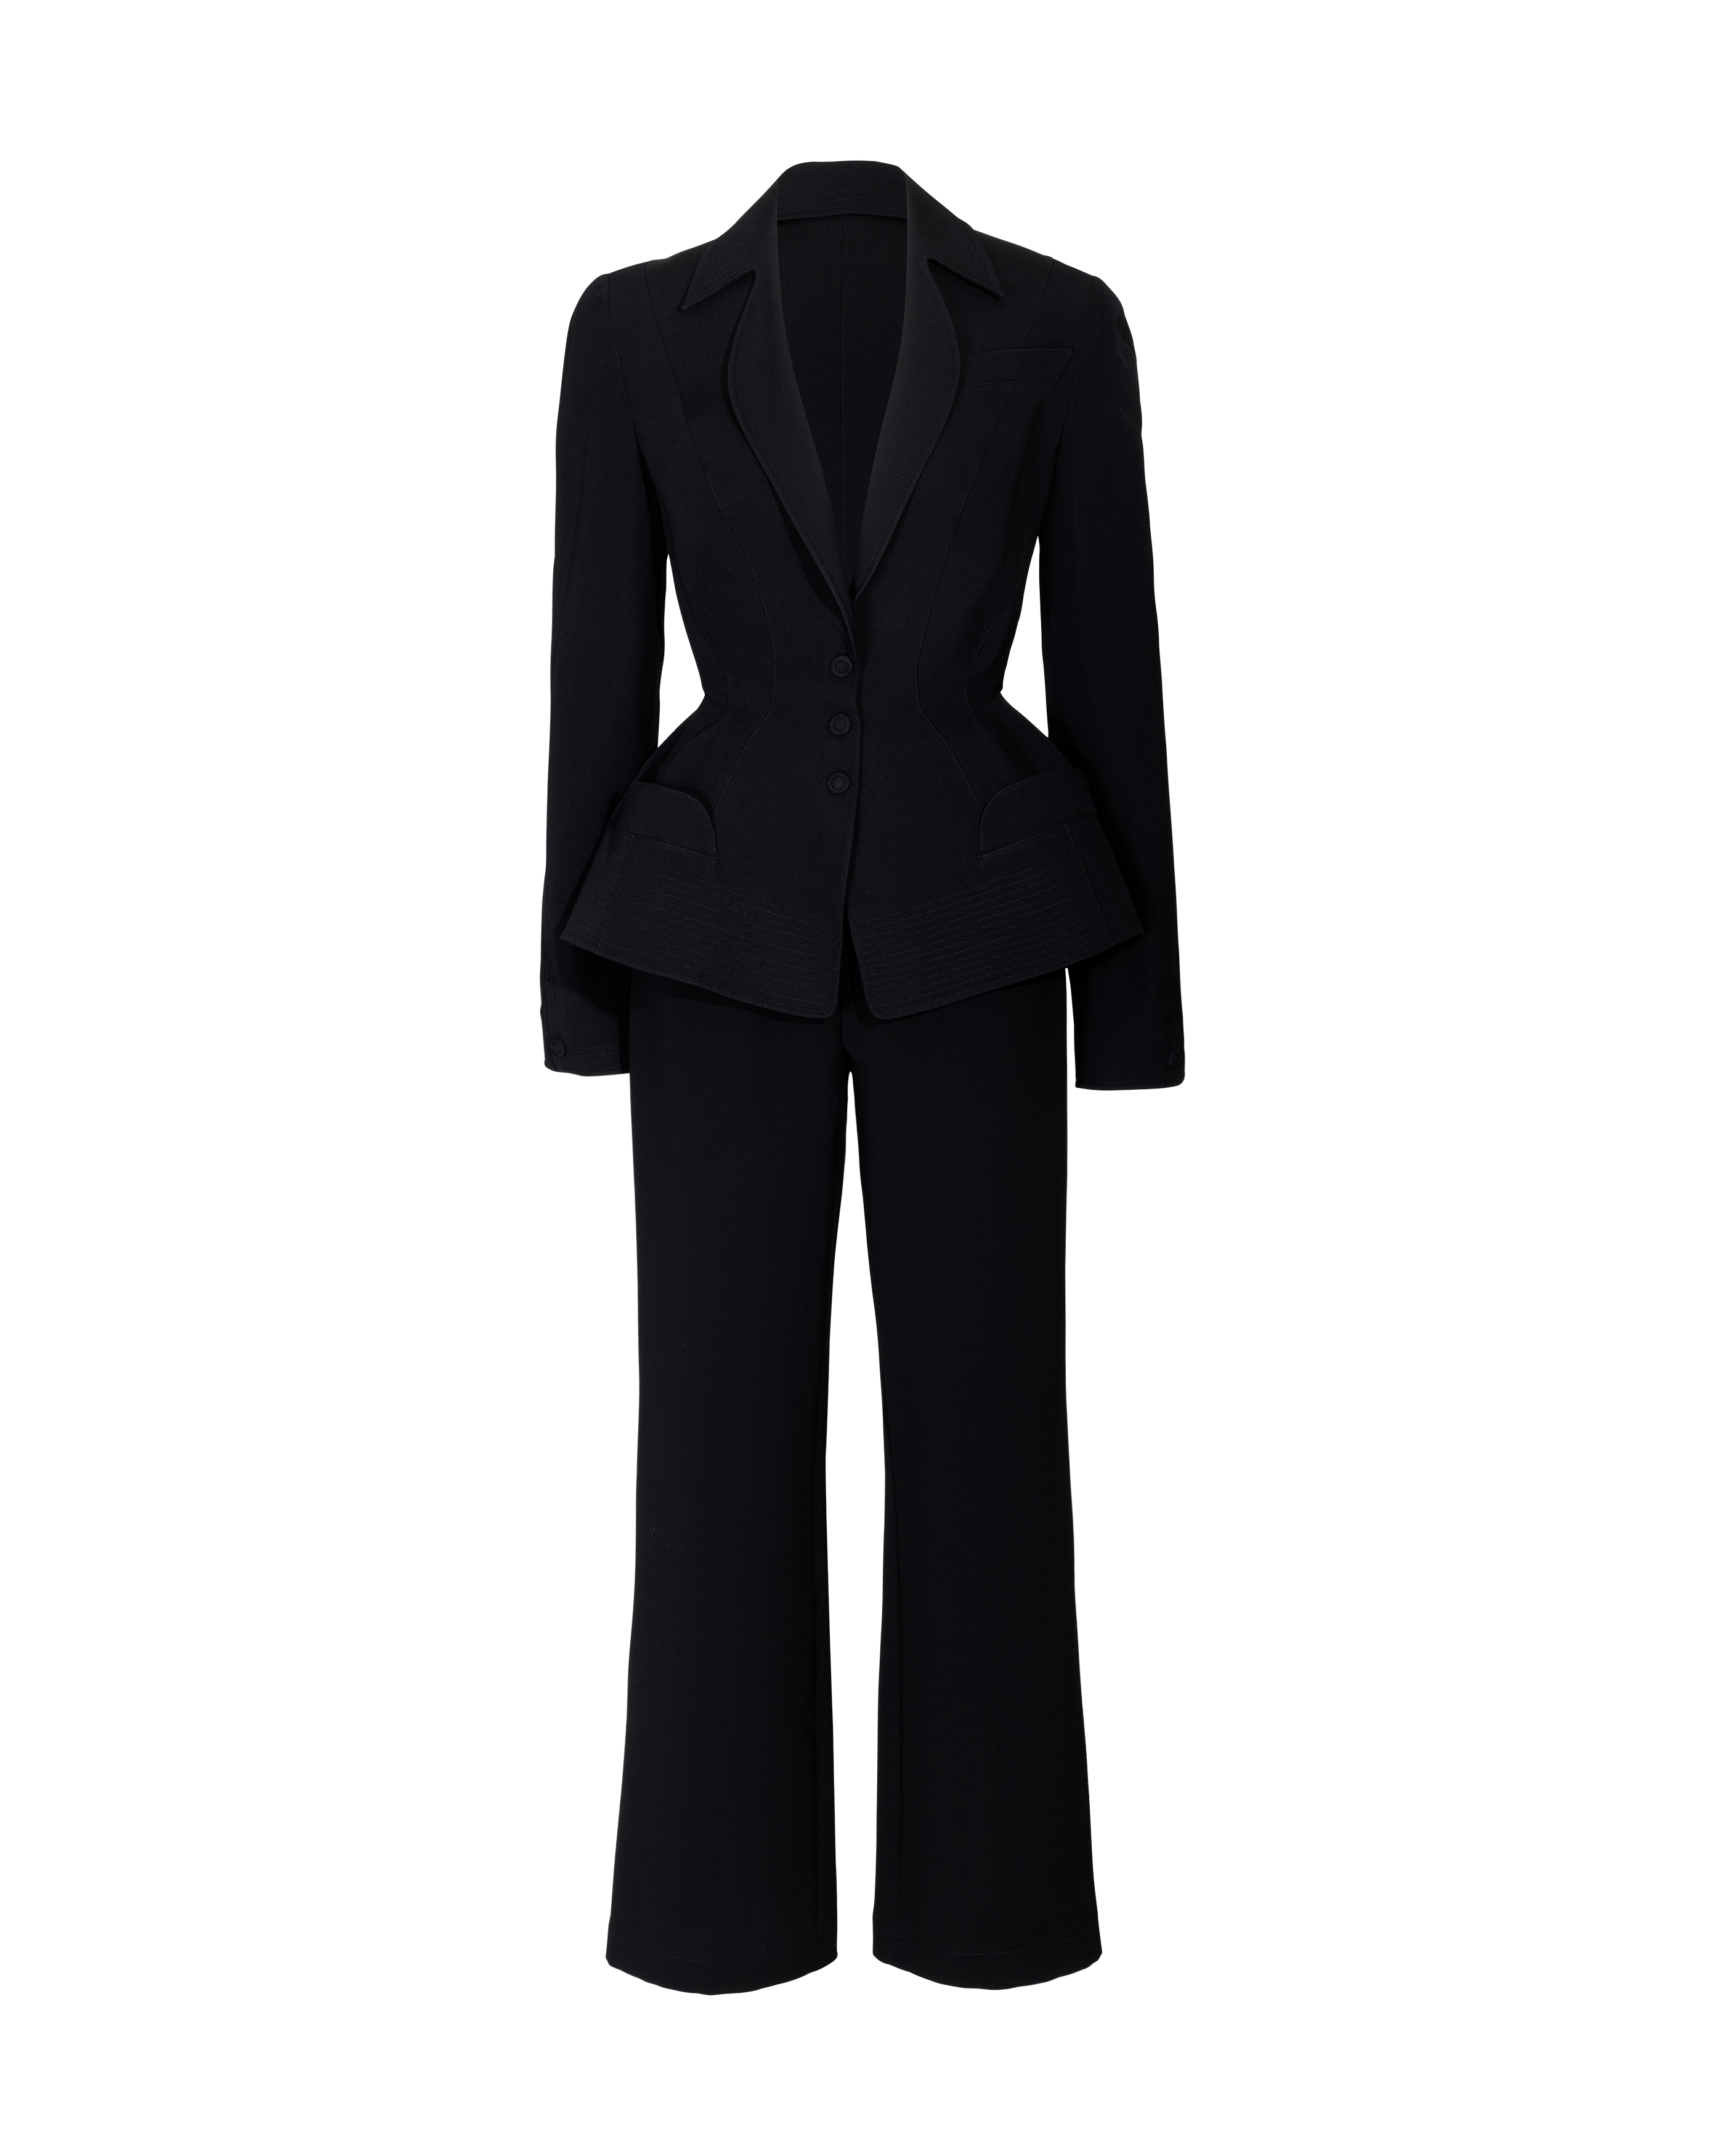 A/W 1987 Black Crepe Blazer and Pant Suit Set